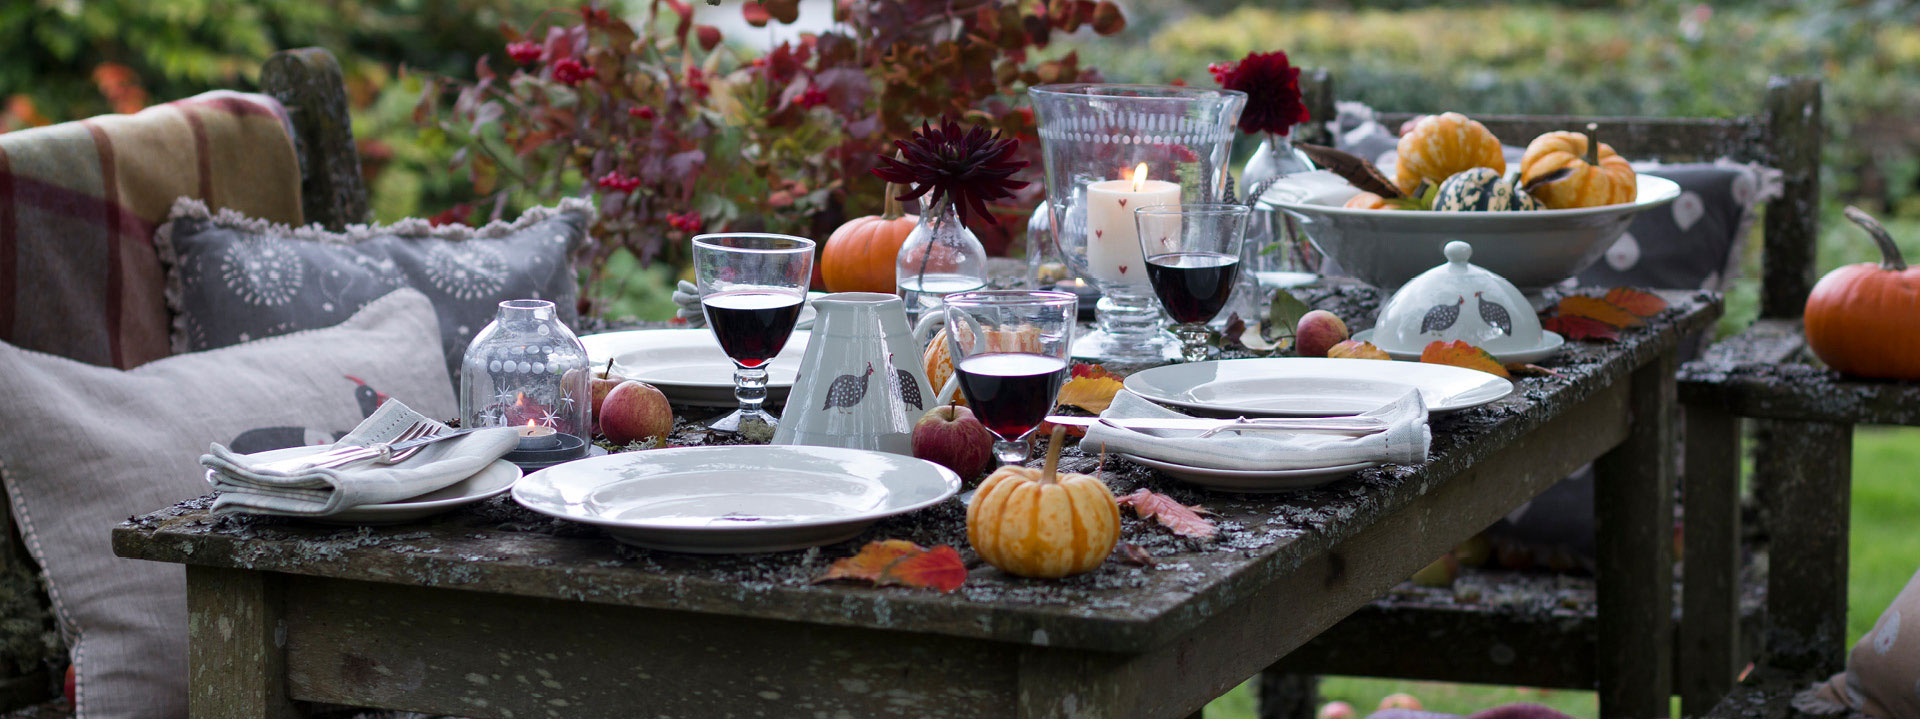 Autumn Table, saffron throw